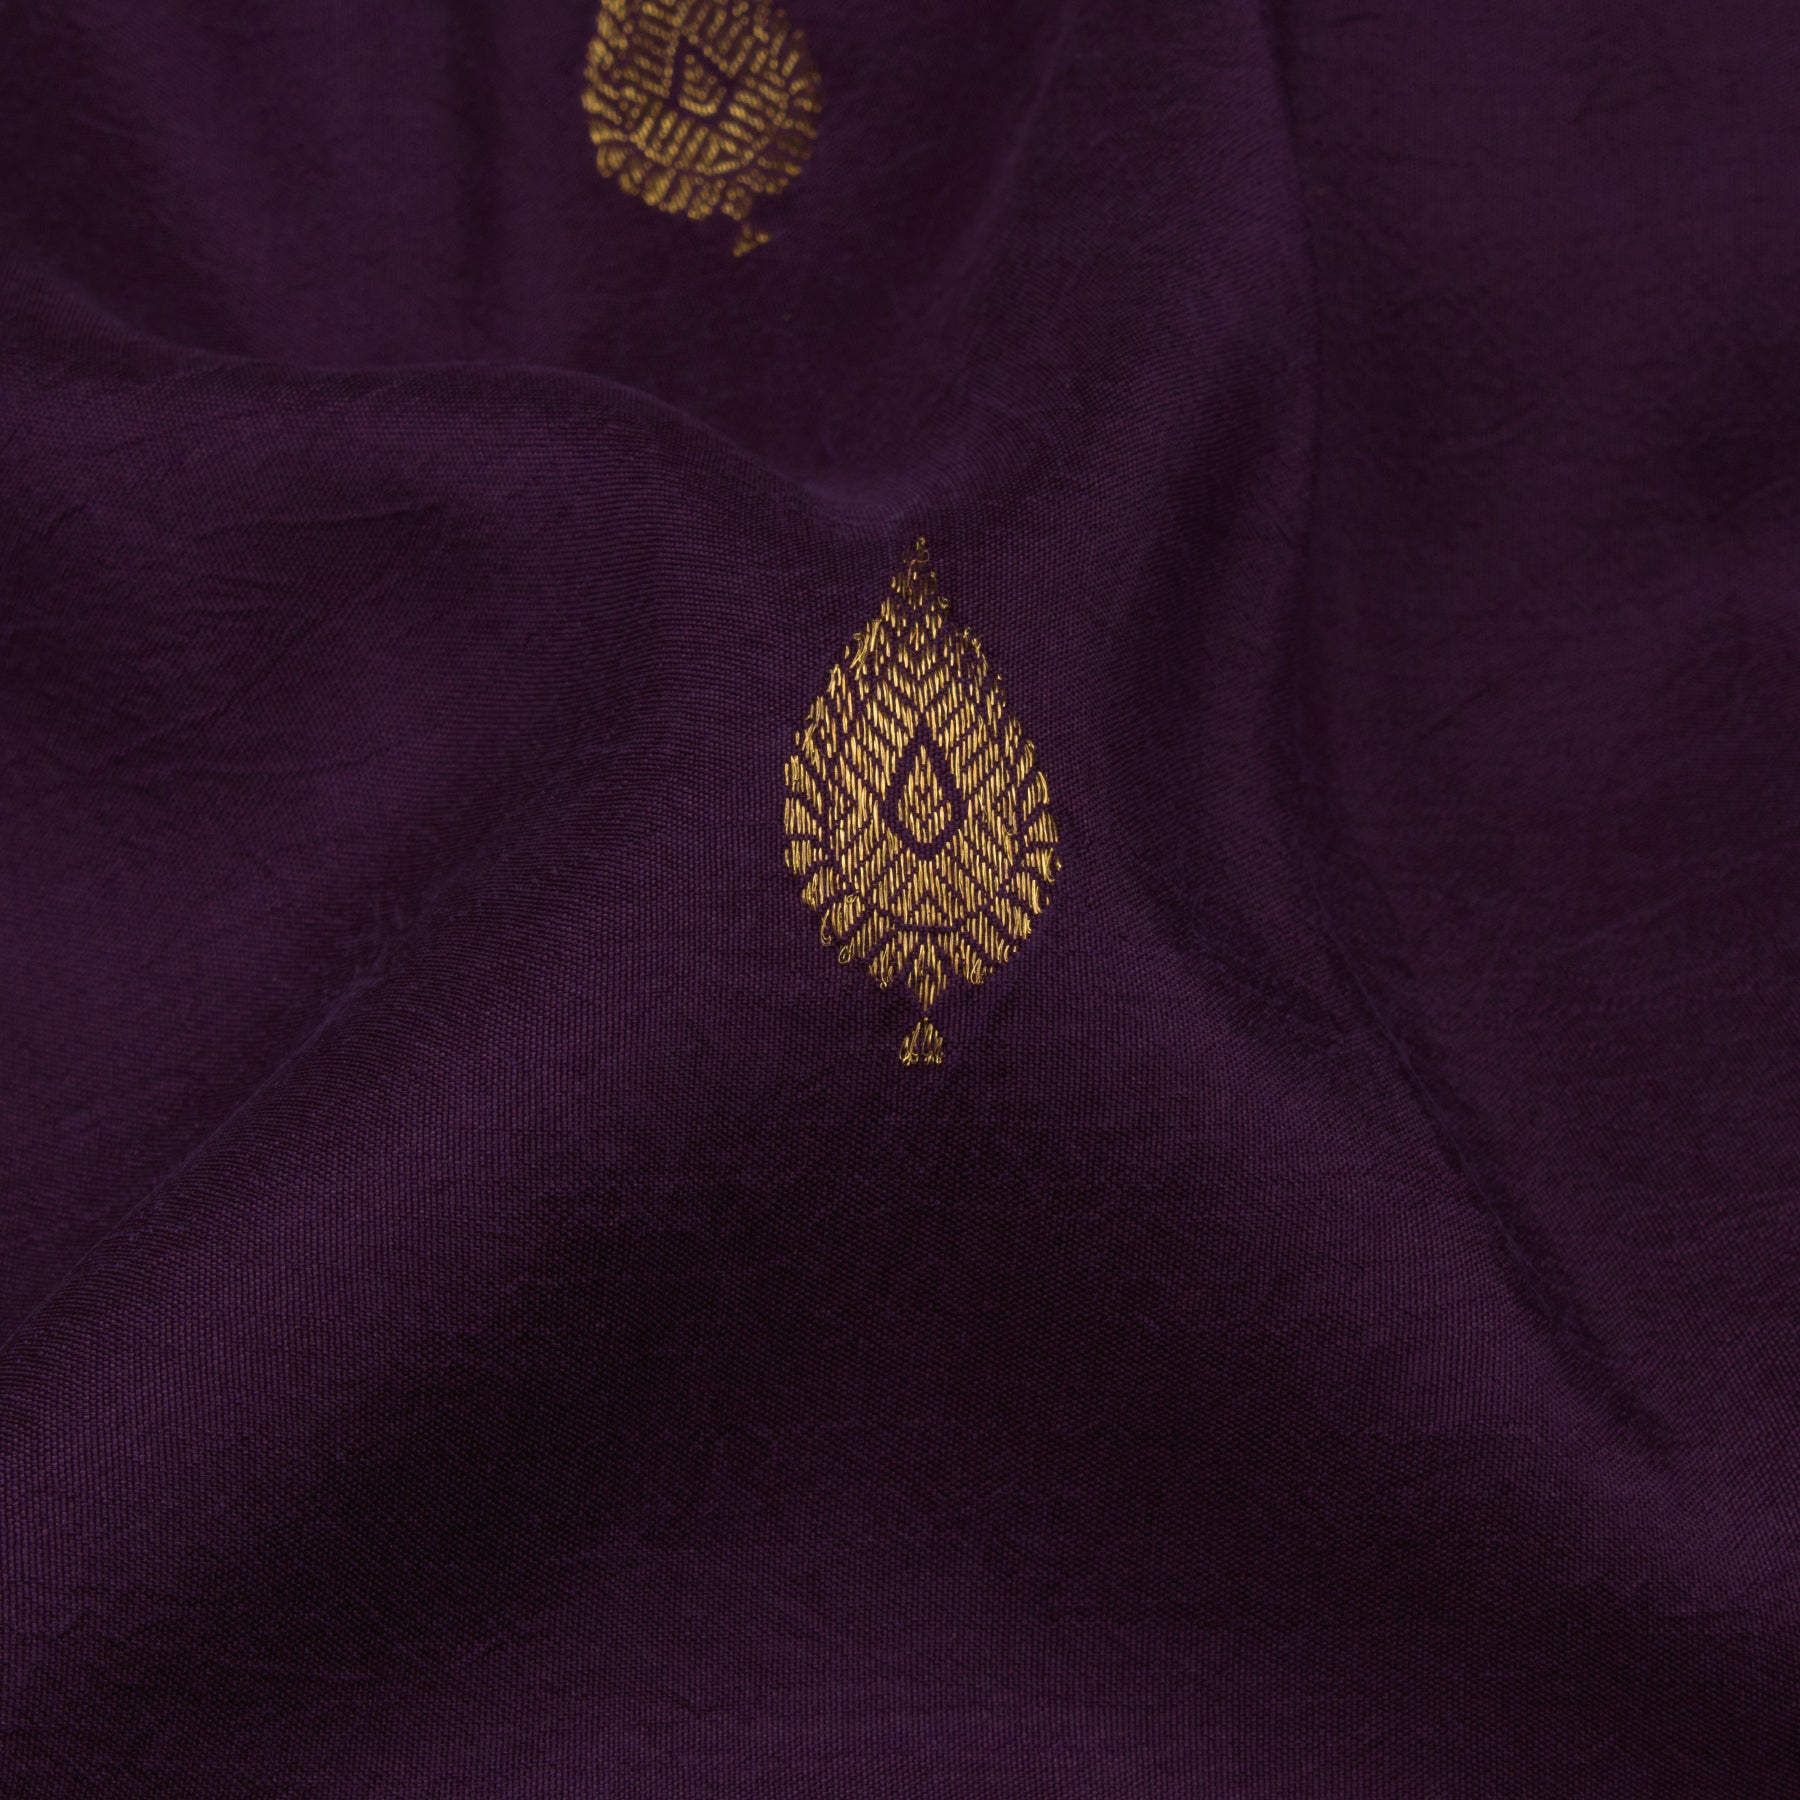 Kanakavalli Kanjivaram Silk Sari 22-110-HS001-05942 - Fabric View